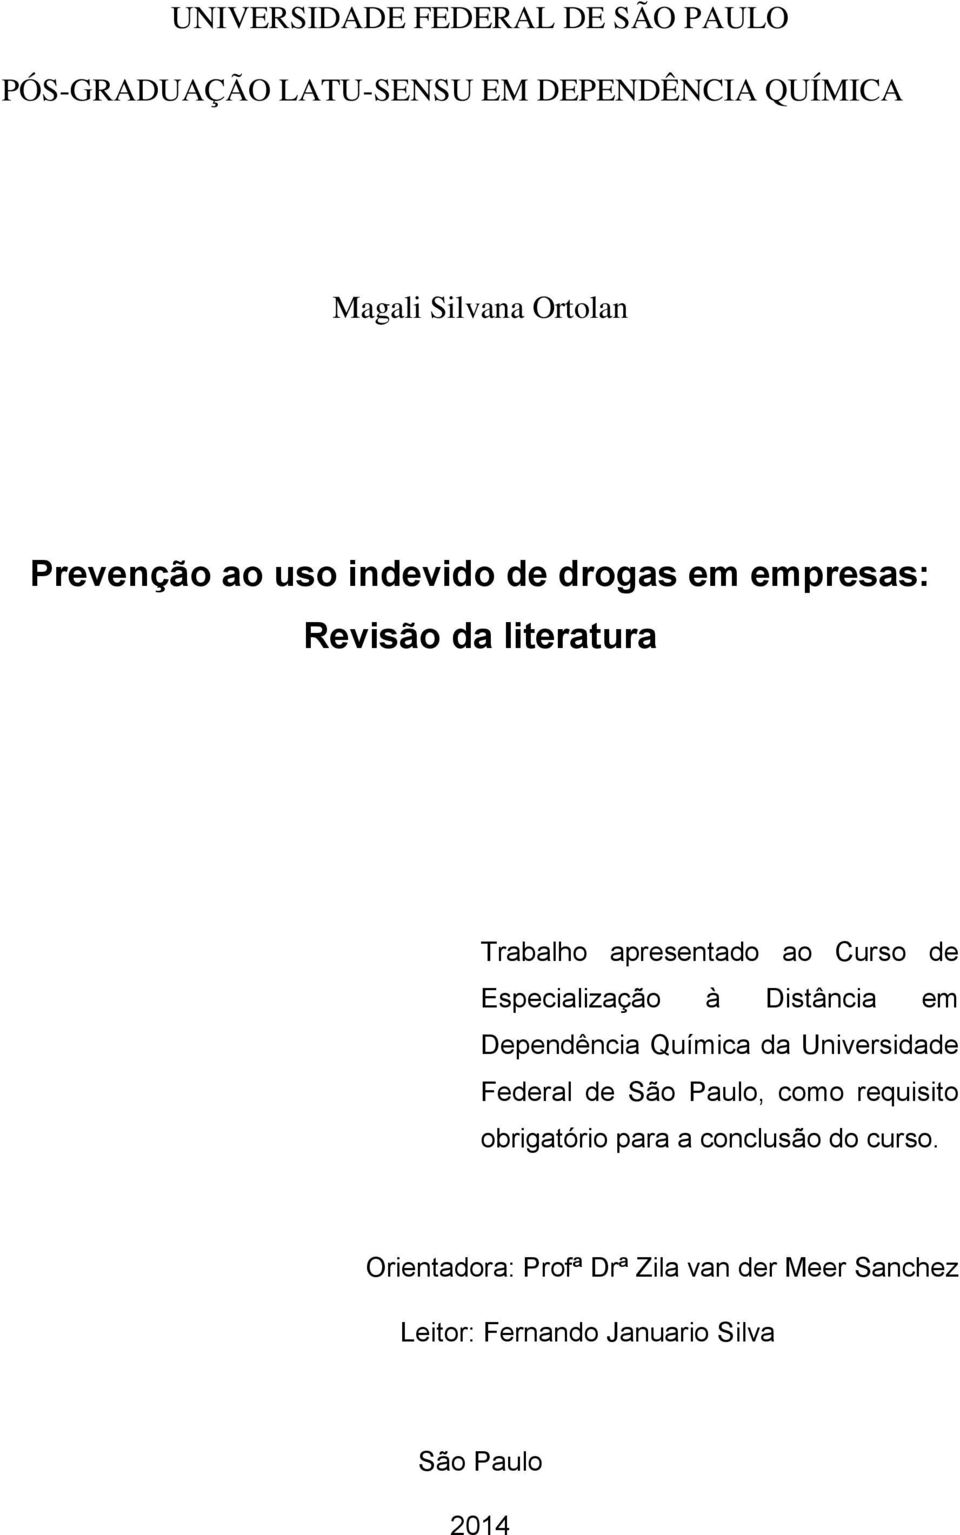 Especialização à Distância em Dependência Química da Universidade Federal de São Paulo, como requisito